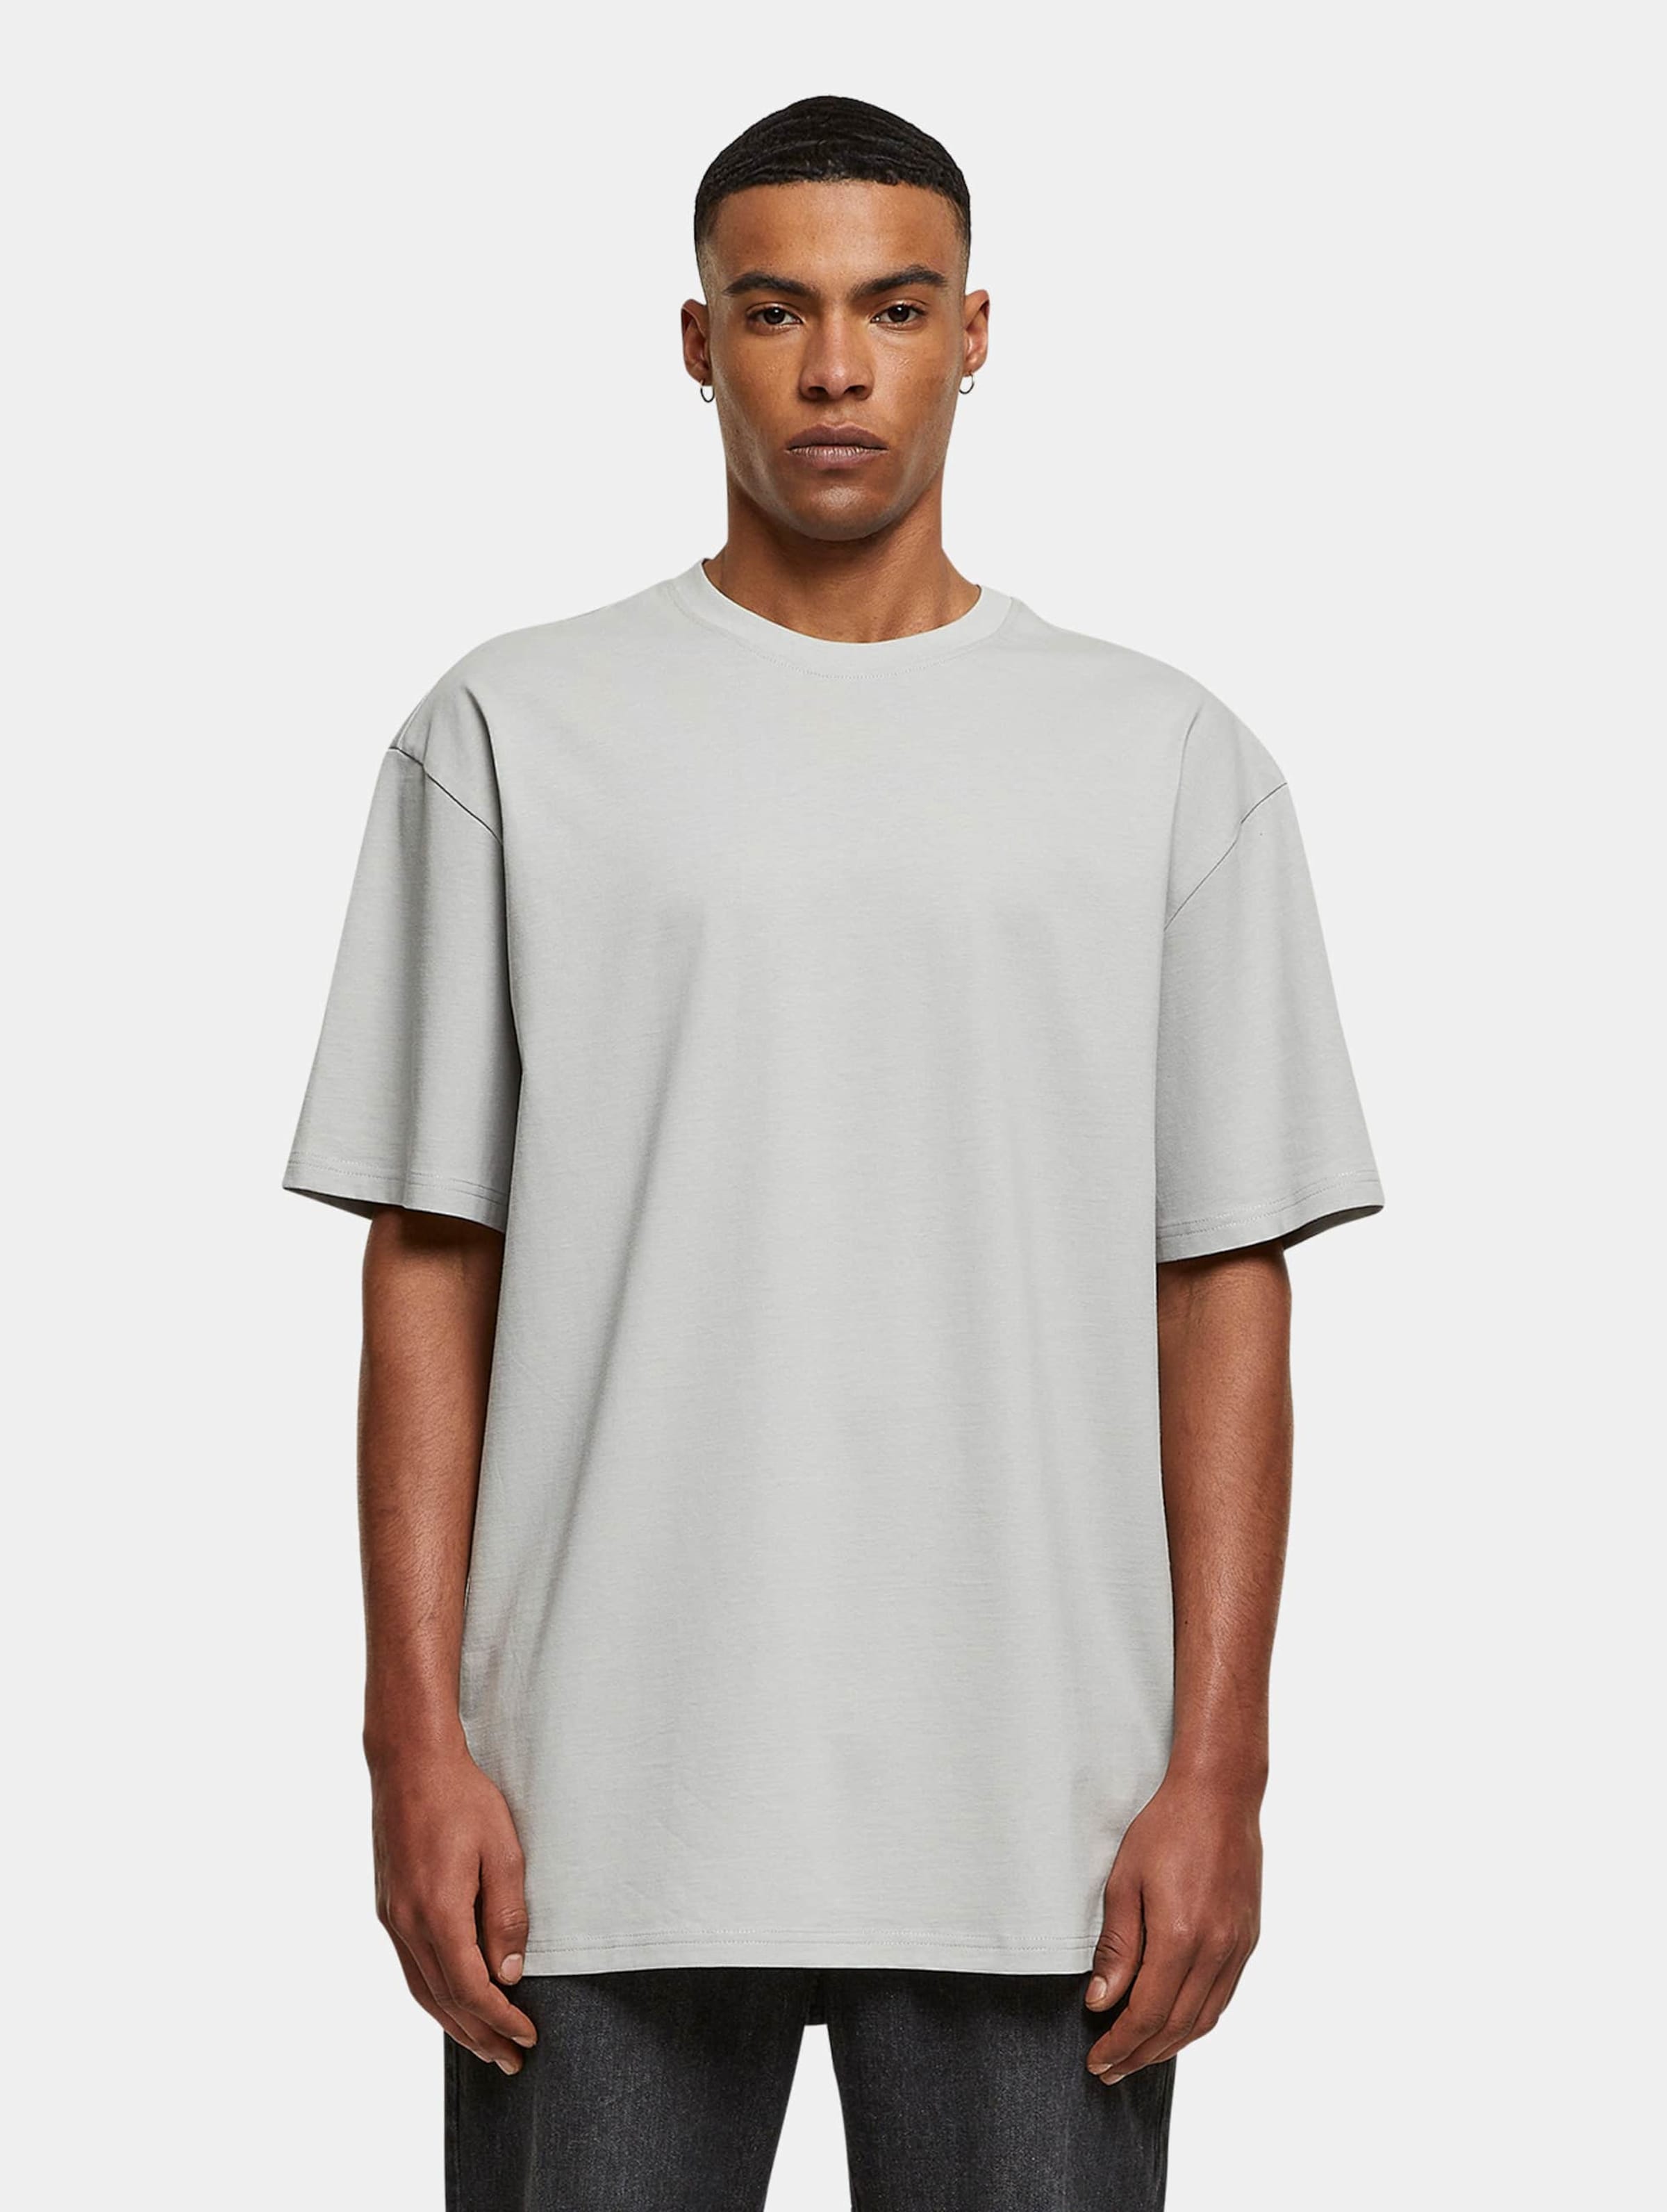 Urban Classics - Triangle Mens Tshirt - XL - Grijs